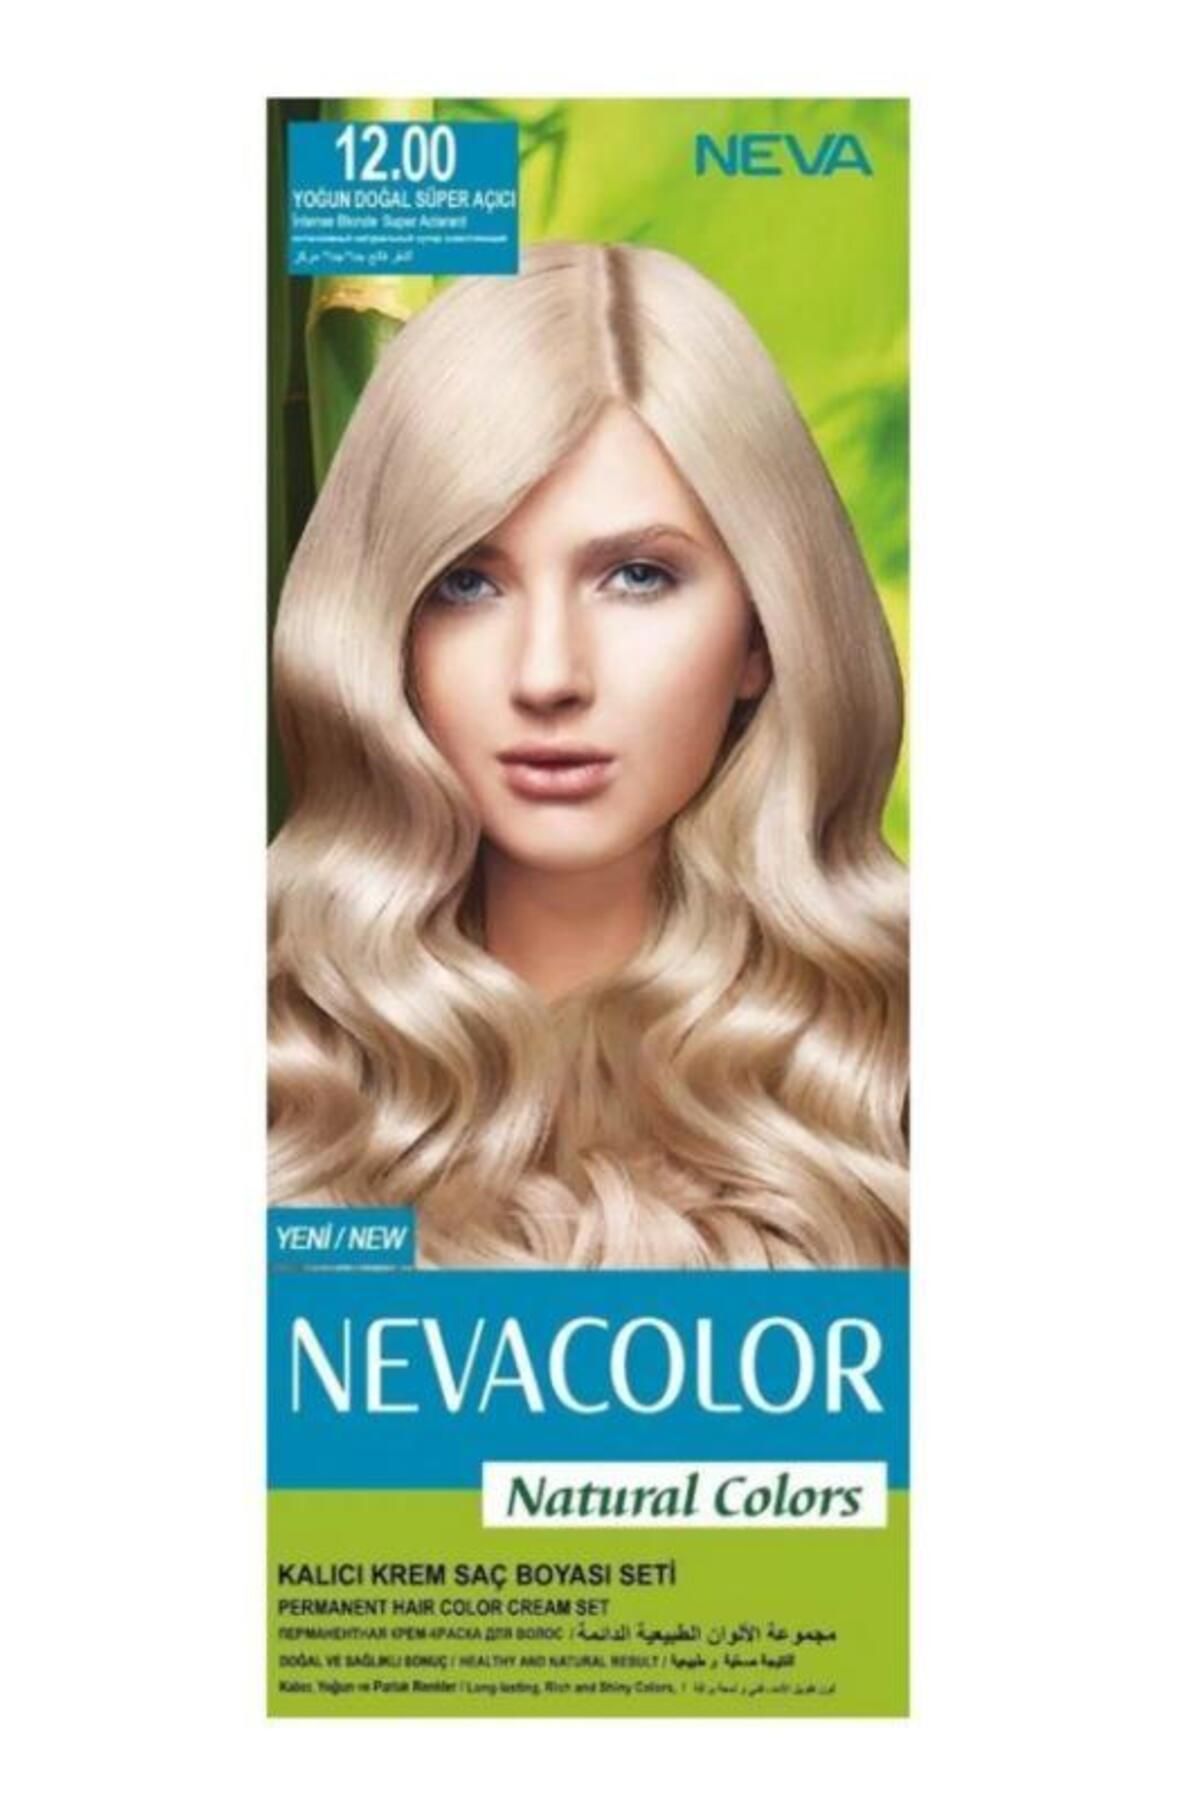 Neva Color Natural Kalıcı Saç Boya Seti 12.00 Yoğun Doğal Süper Açıcı